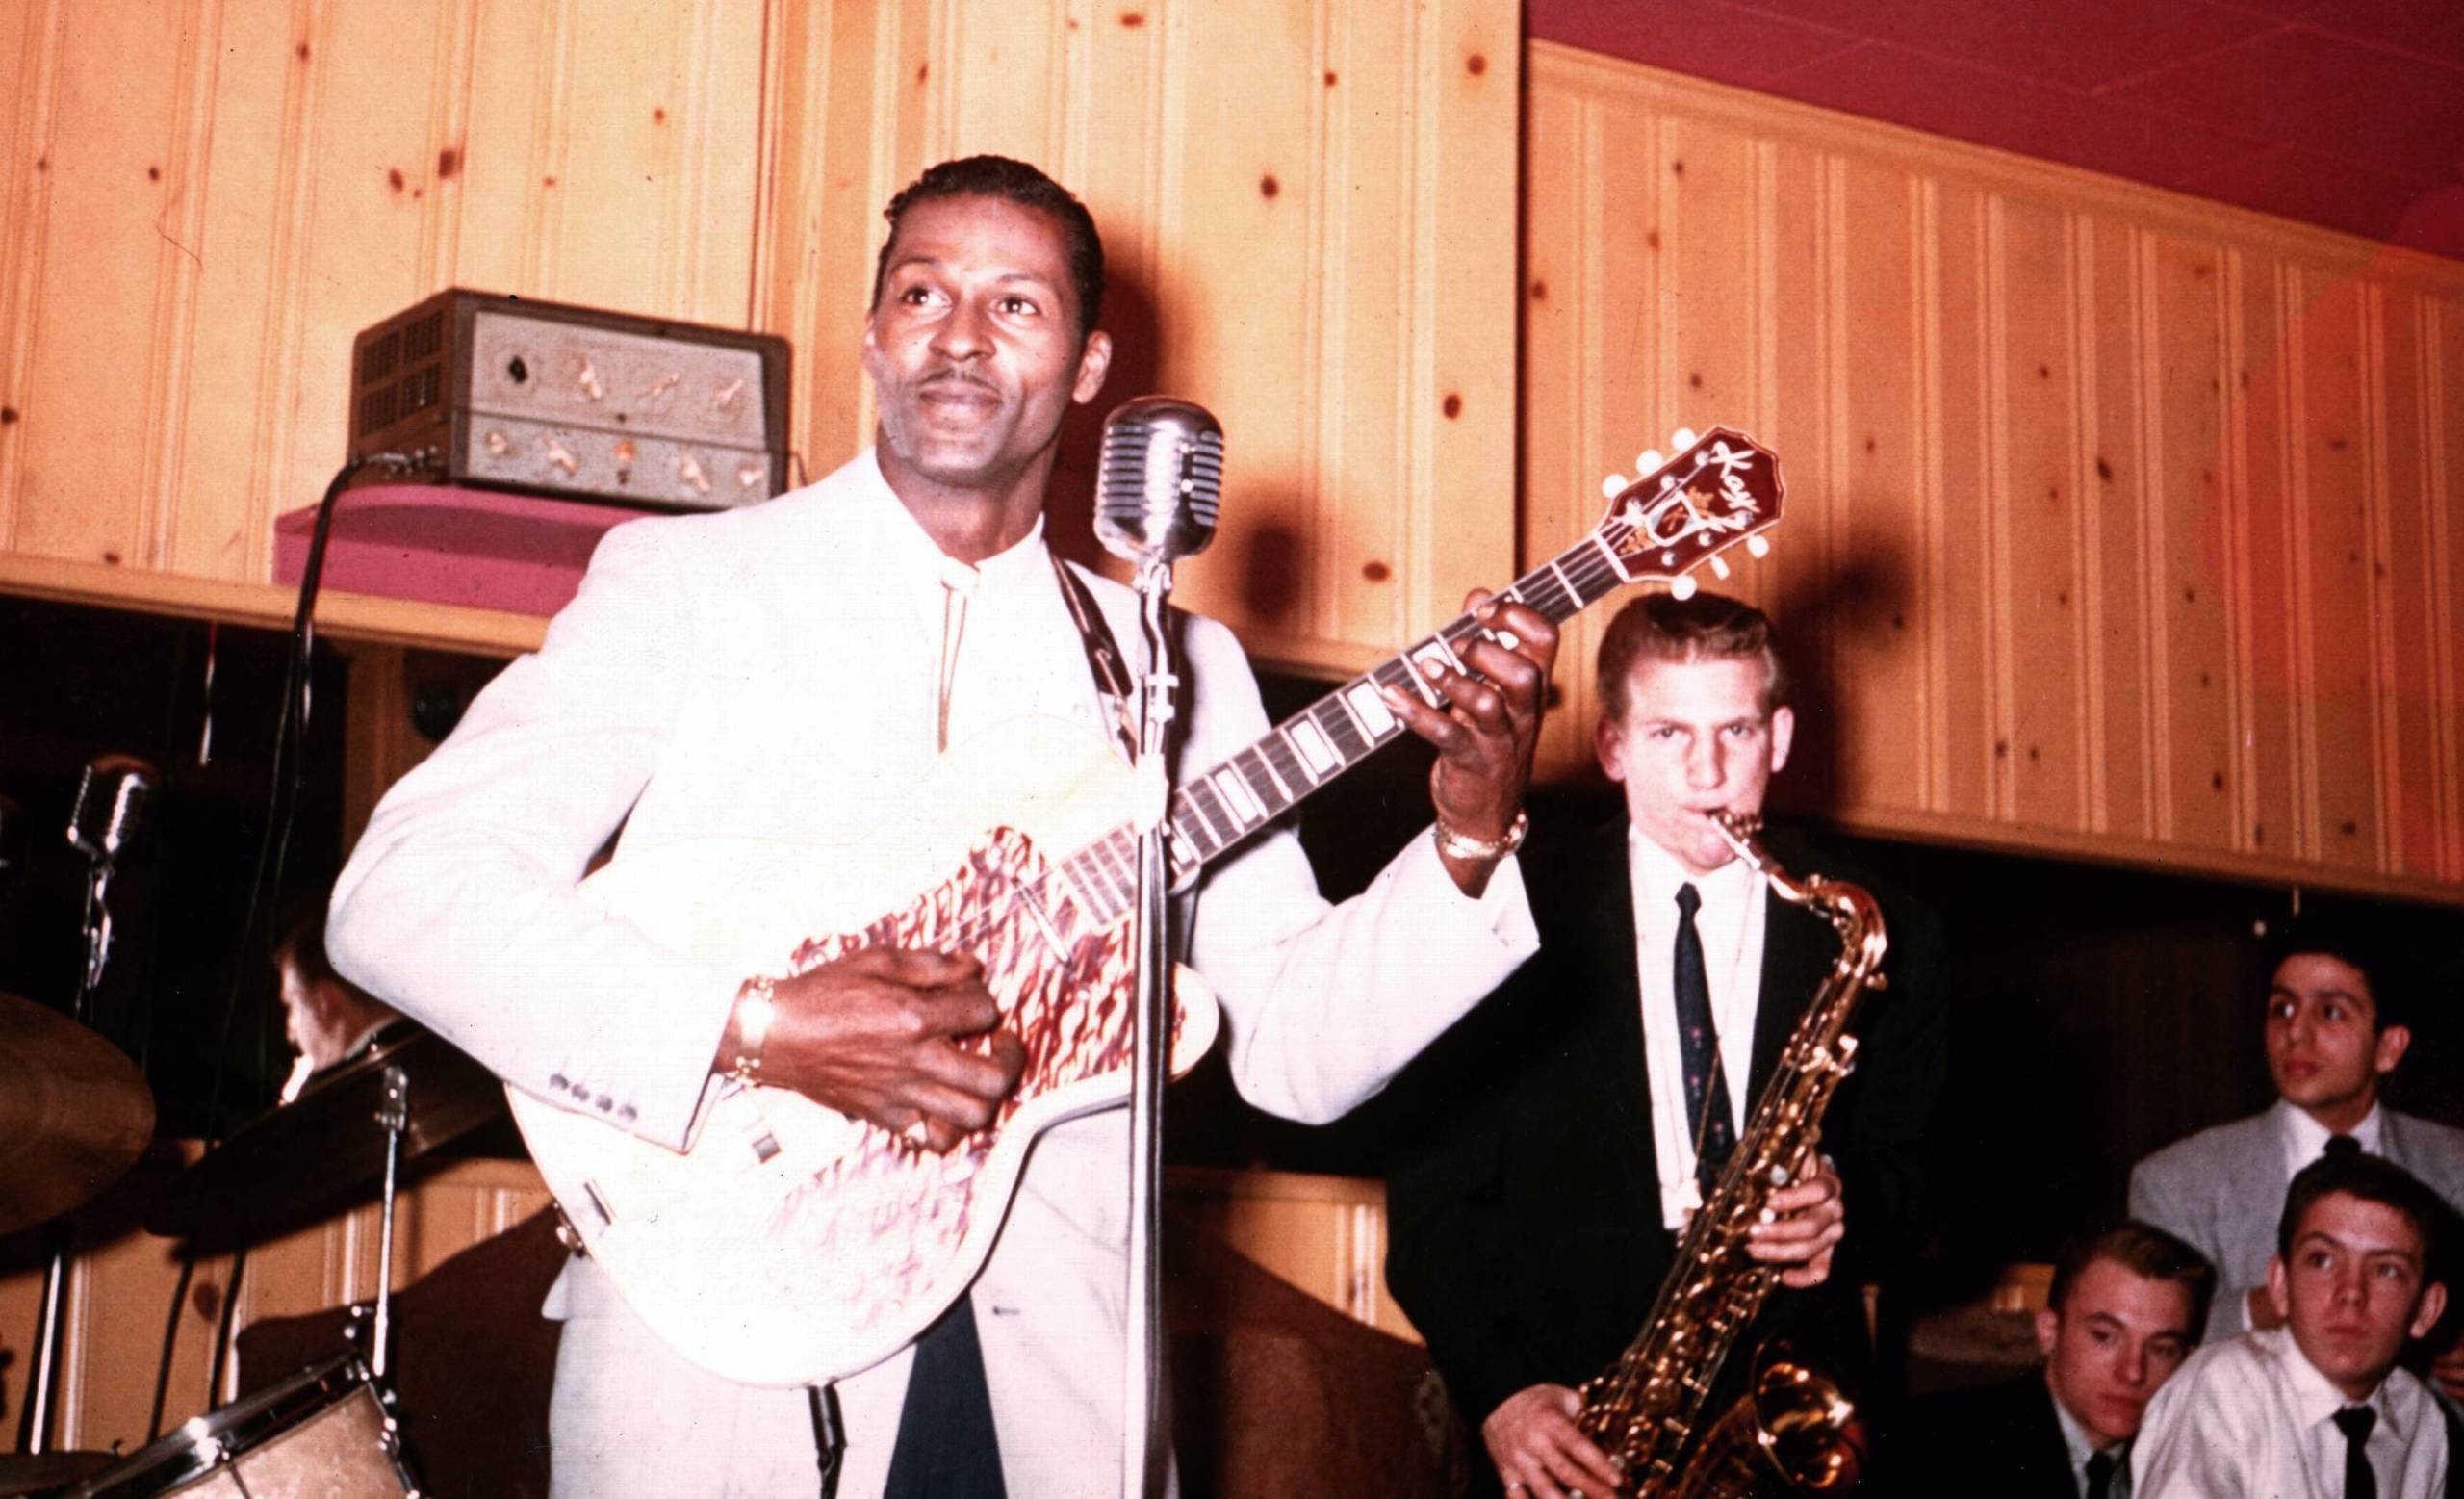 Chuck Berry circa 1956